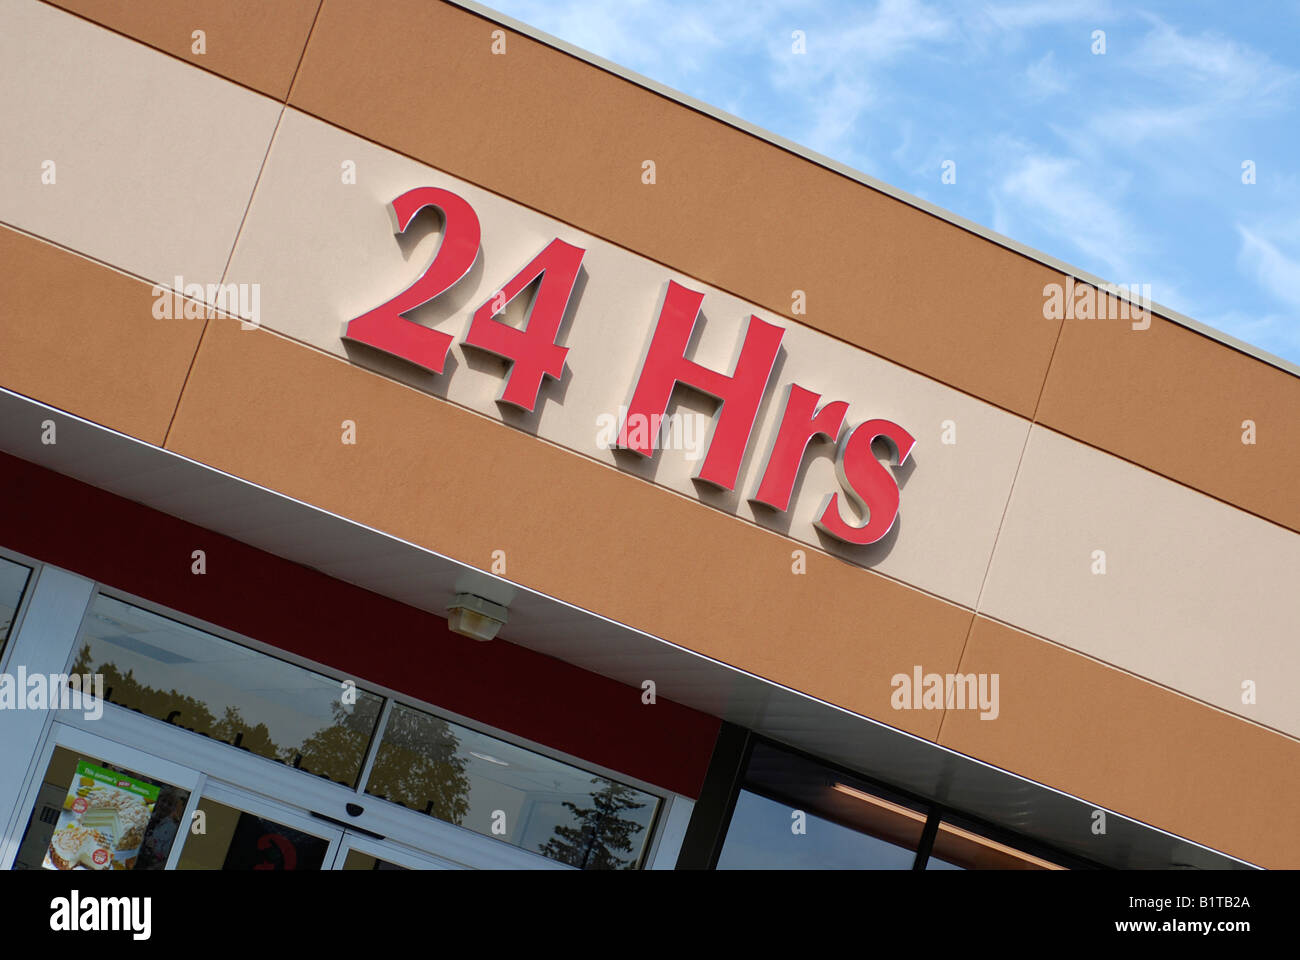 Las 24 horas, tienda/Supermercado Entrada frontal Foto de stock